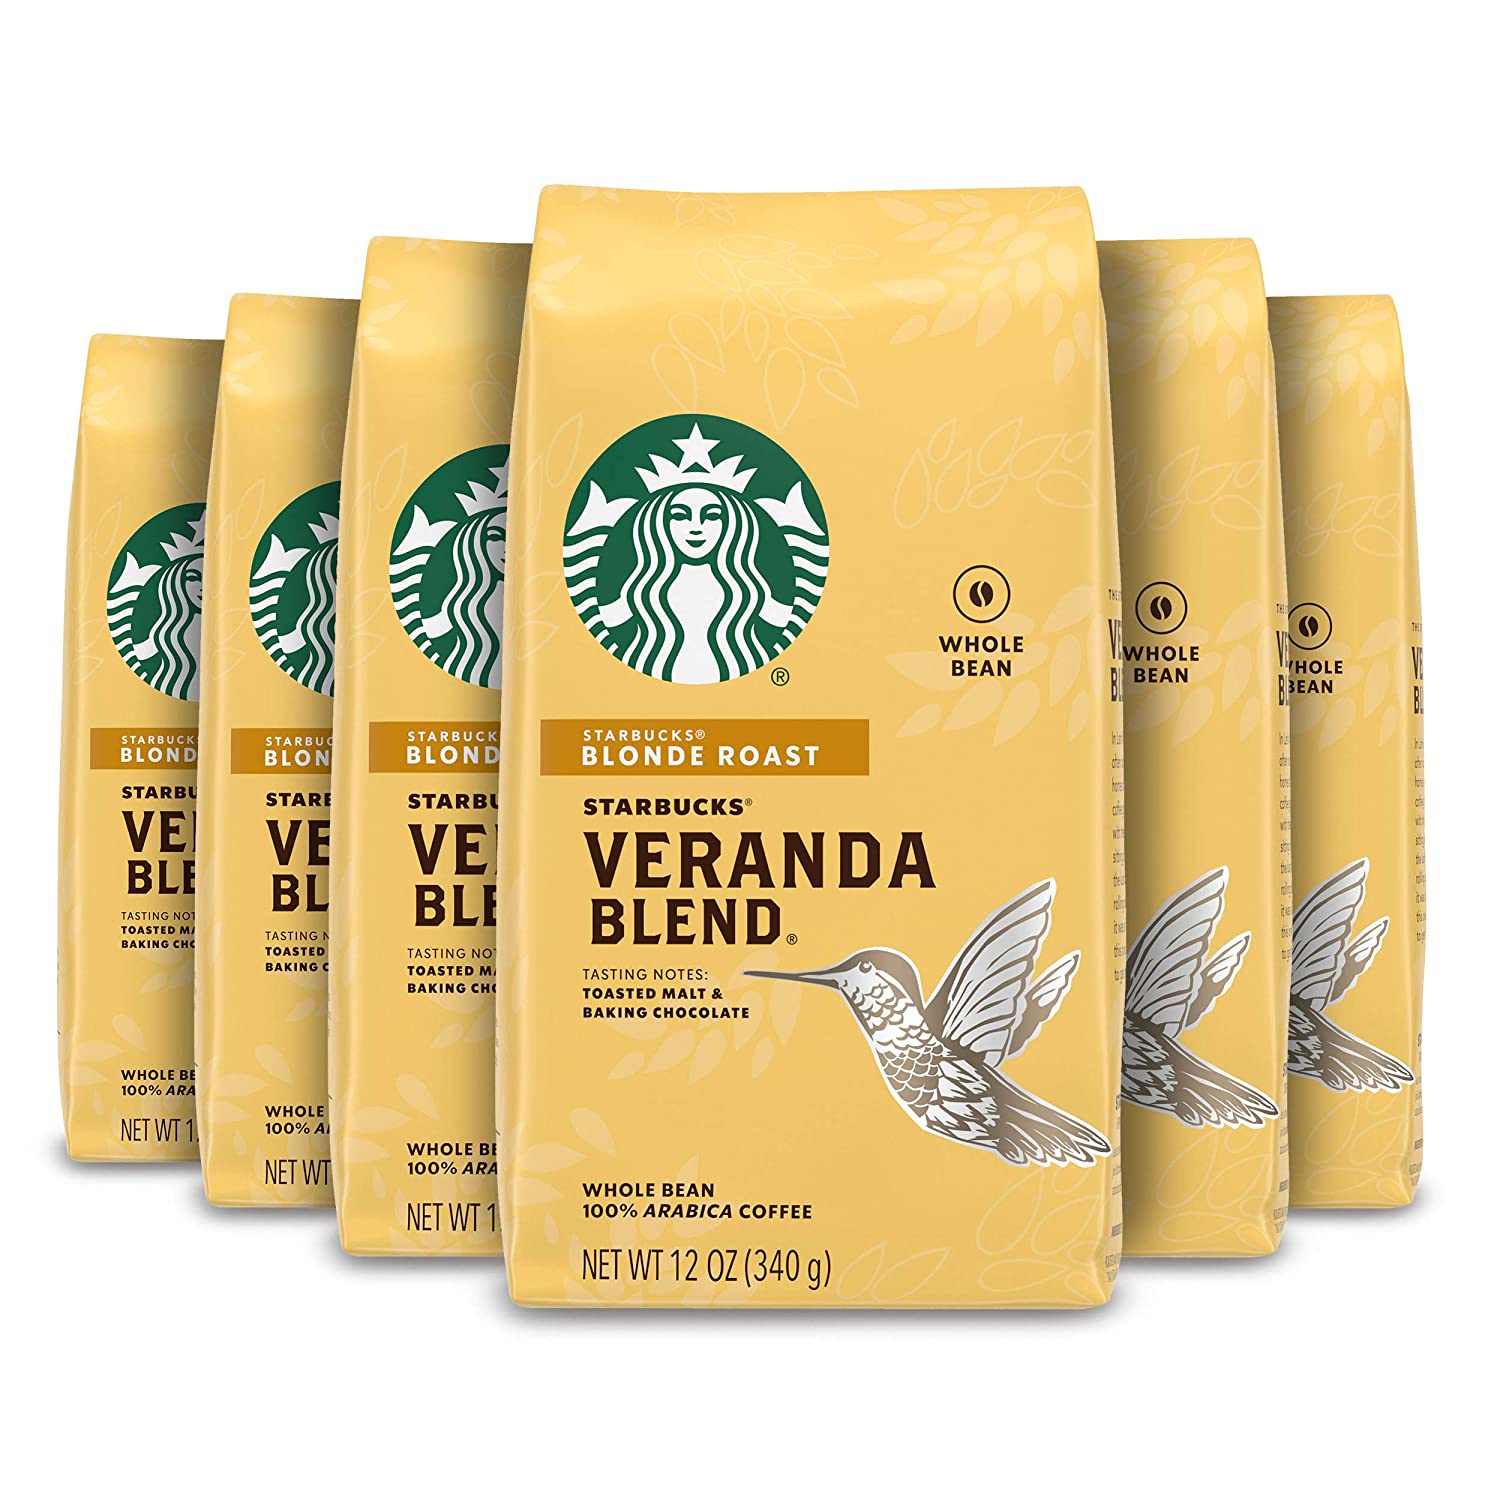 8. Starbucks Blonde Roast Coffee – Veranda Blend (6 packages) 